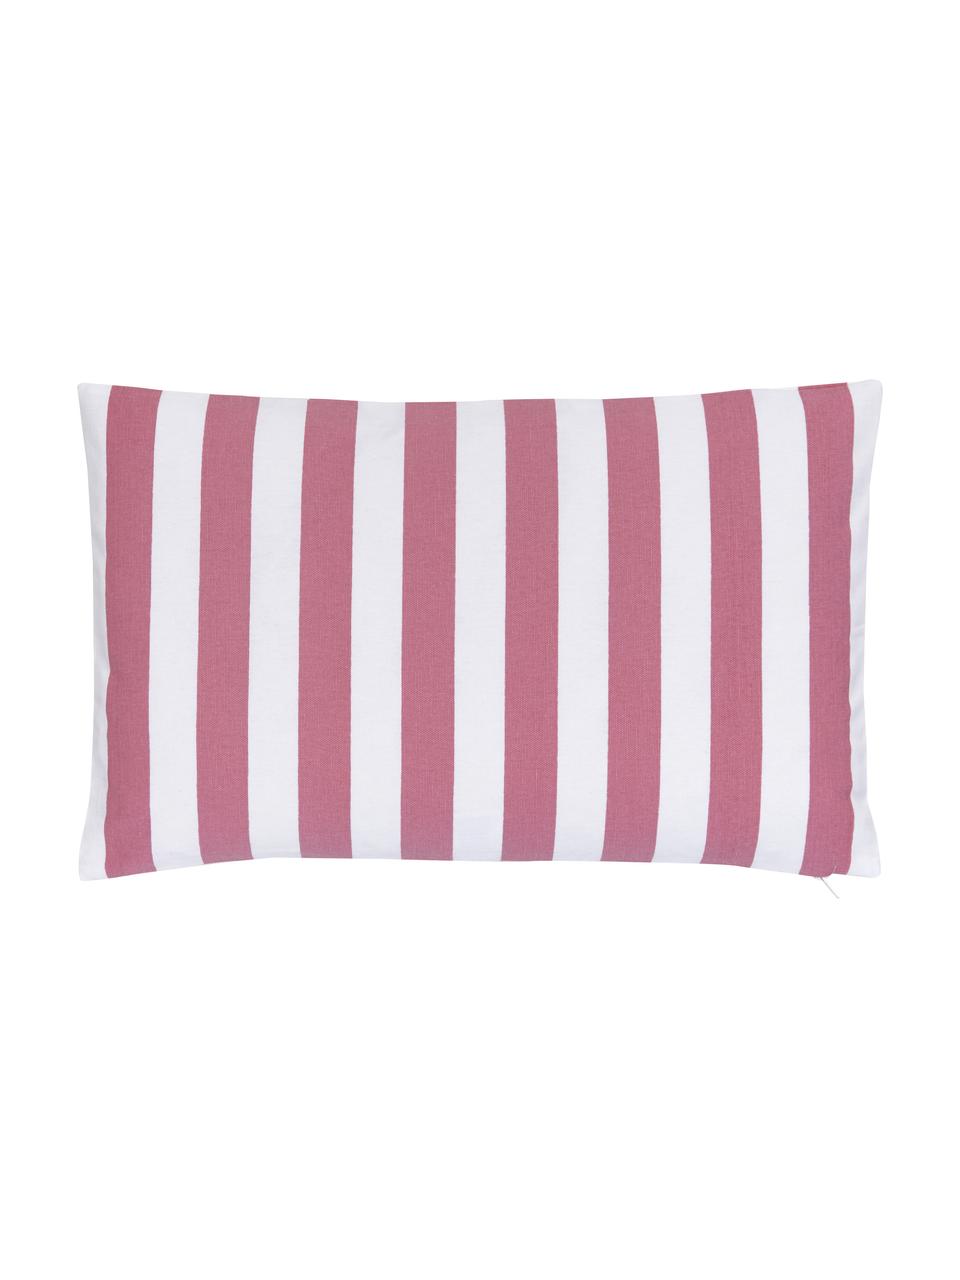 Housse de coussin rectangulaire rose/blanc Timon, 100 % coton, Rose, blanc, larg. 30 x long. 50 cm